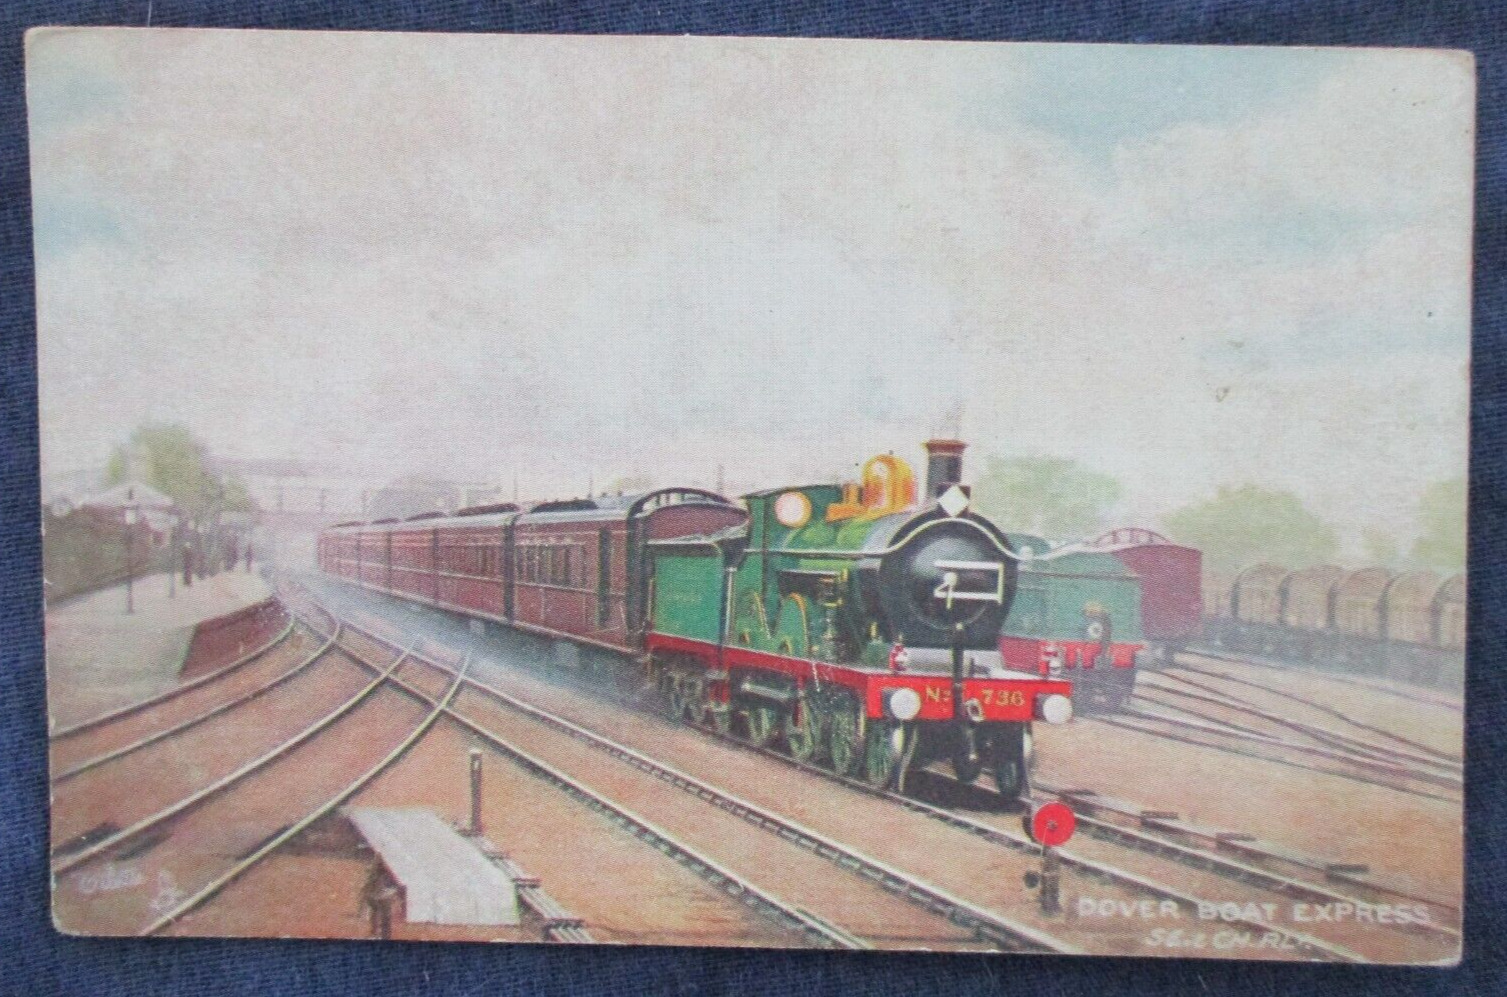 1907 Great Britain SE & CH RR Dover Boat Express Train Postcard